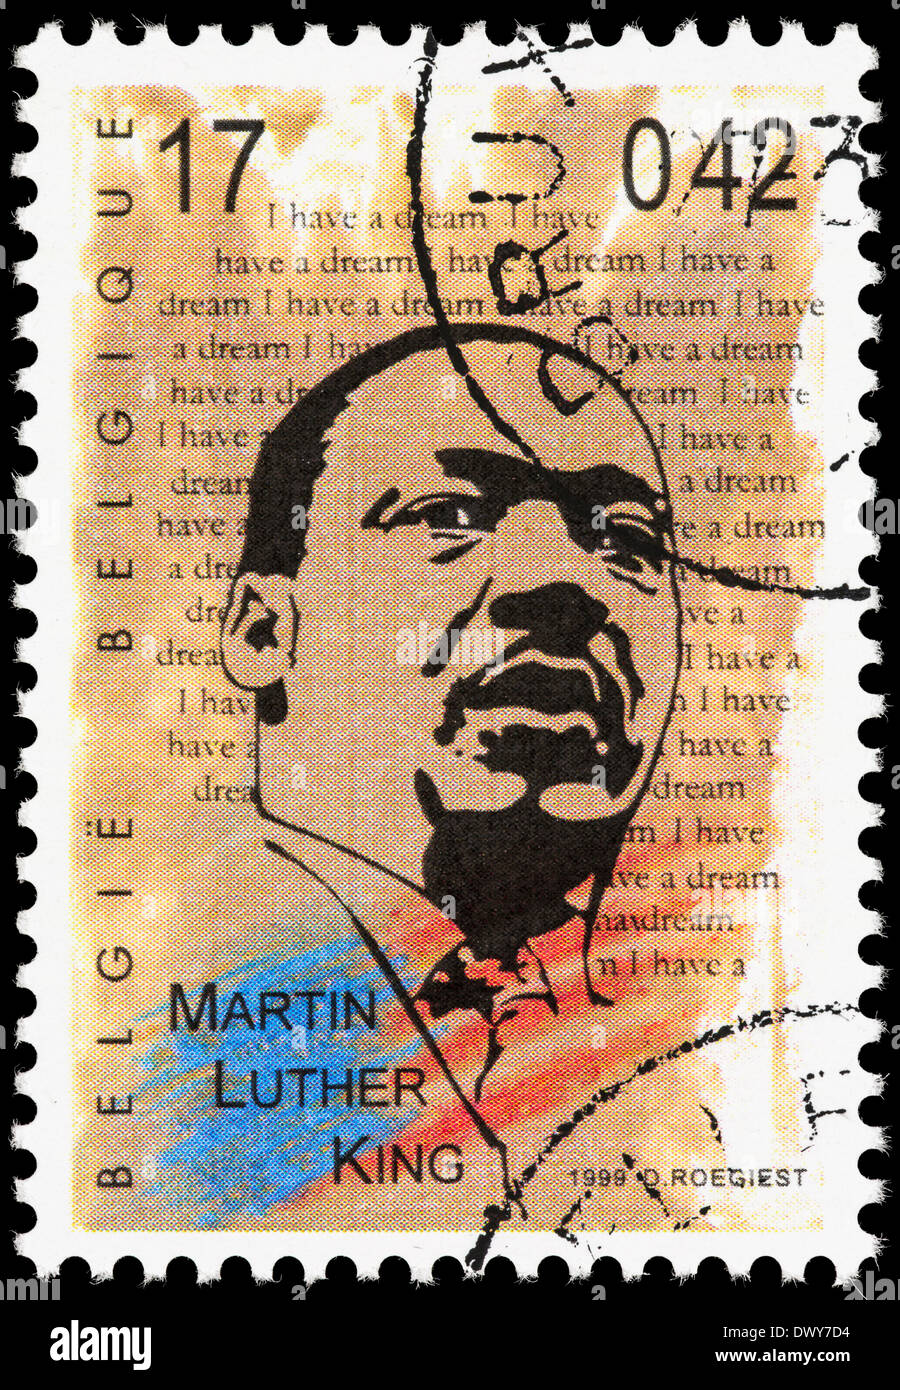 Belgique timbre-poste avec une illustration de Martin Luther King, "I have a dream' dans l'arrière-plan. Banque D'Images